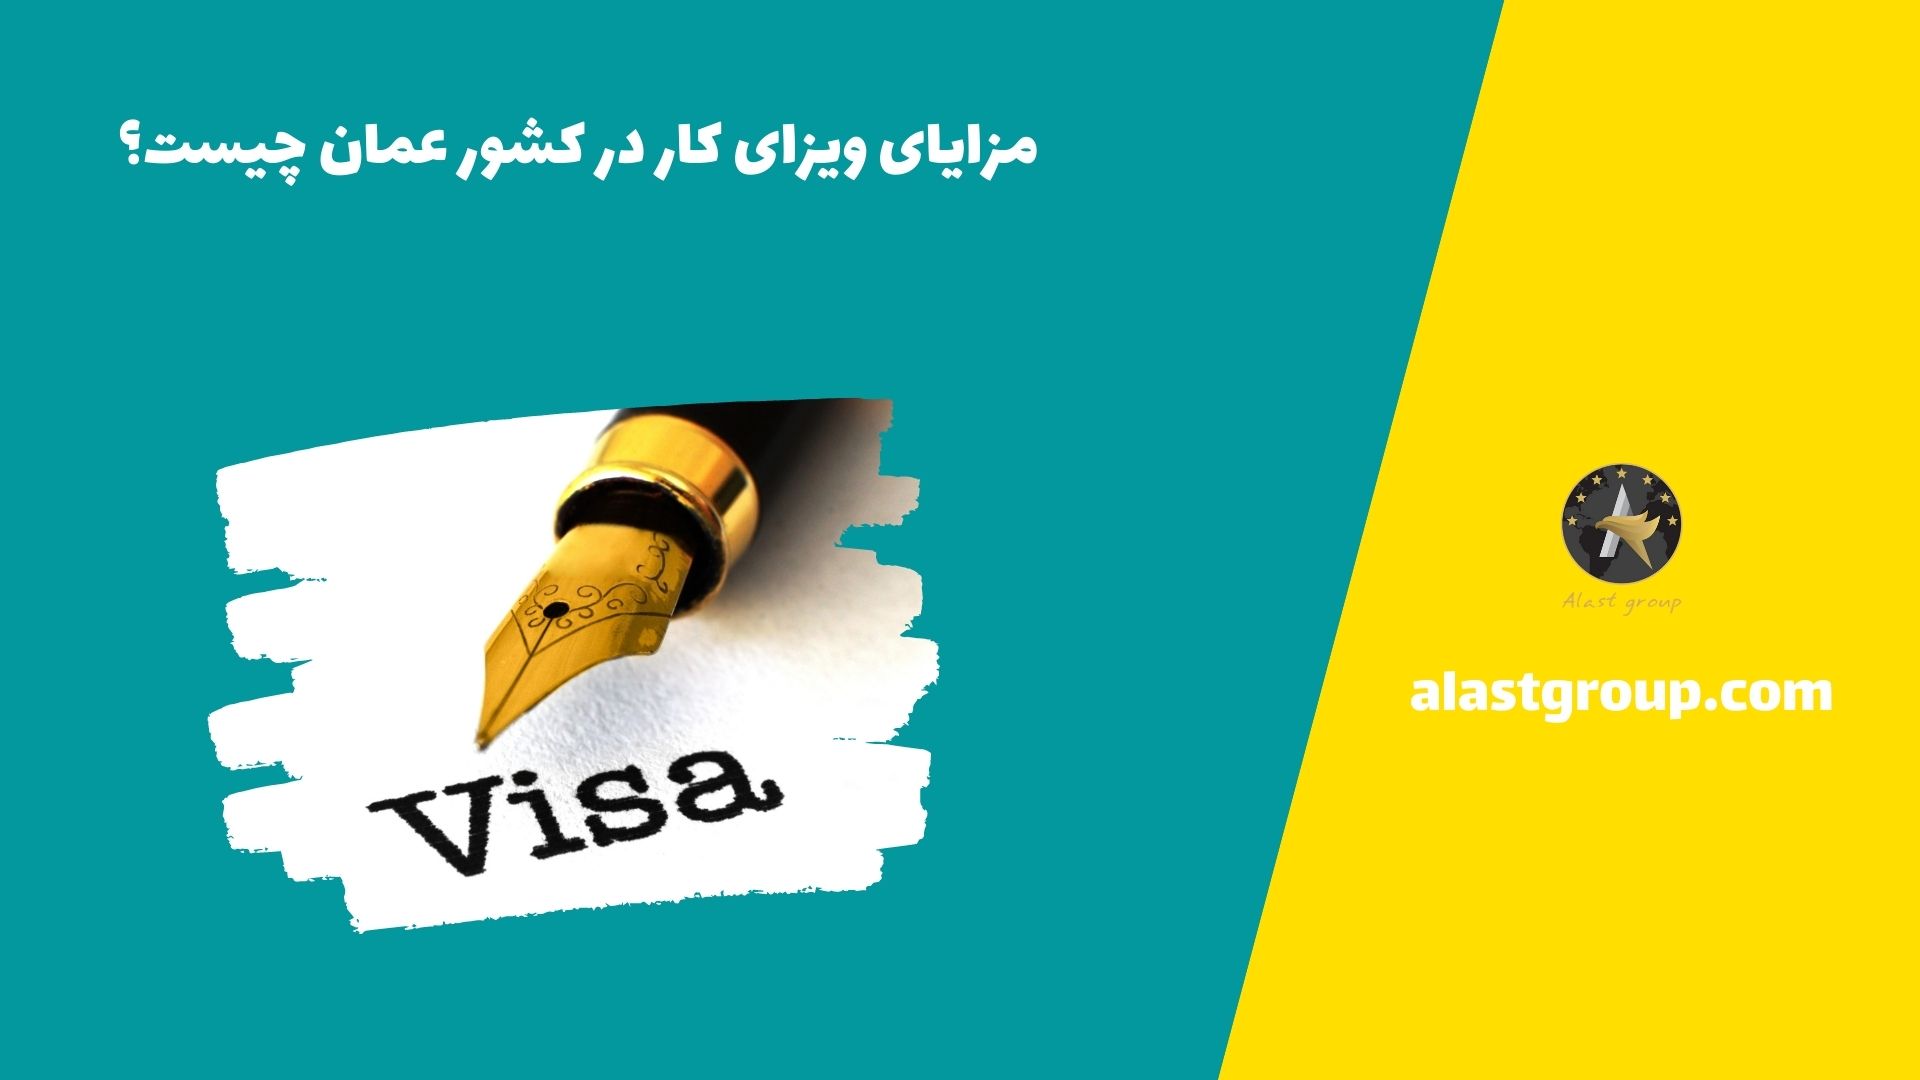 مزایای ویزای کار در کشور عمان چیست؟